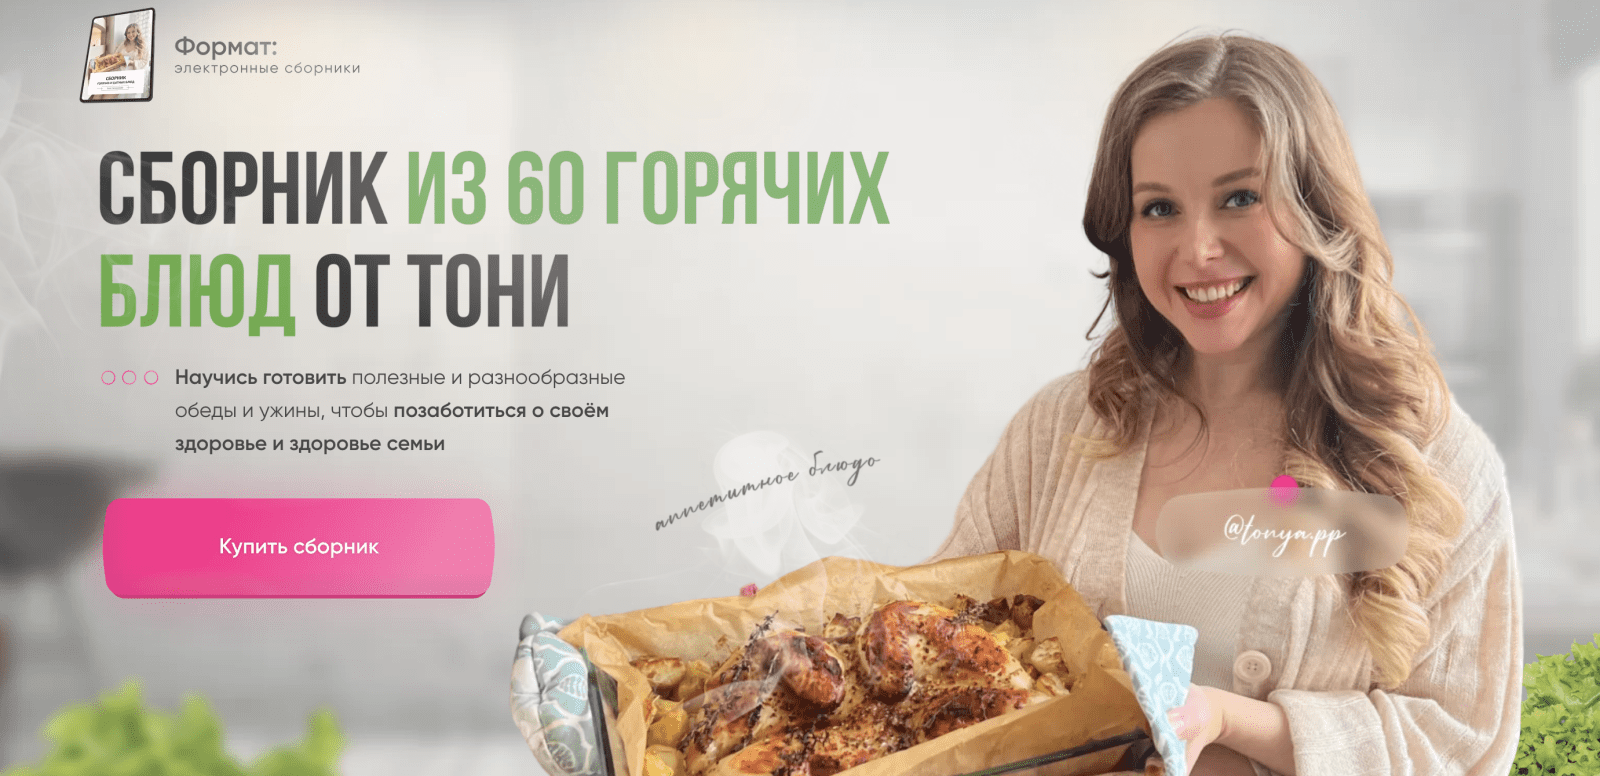 Изображение [Тоня Сальникова] Сборник из 60 горячих блюд (2022) в посте 260956